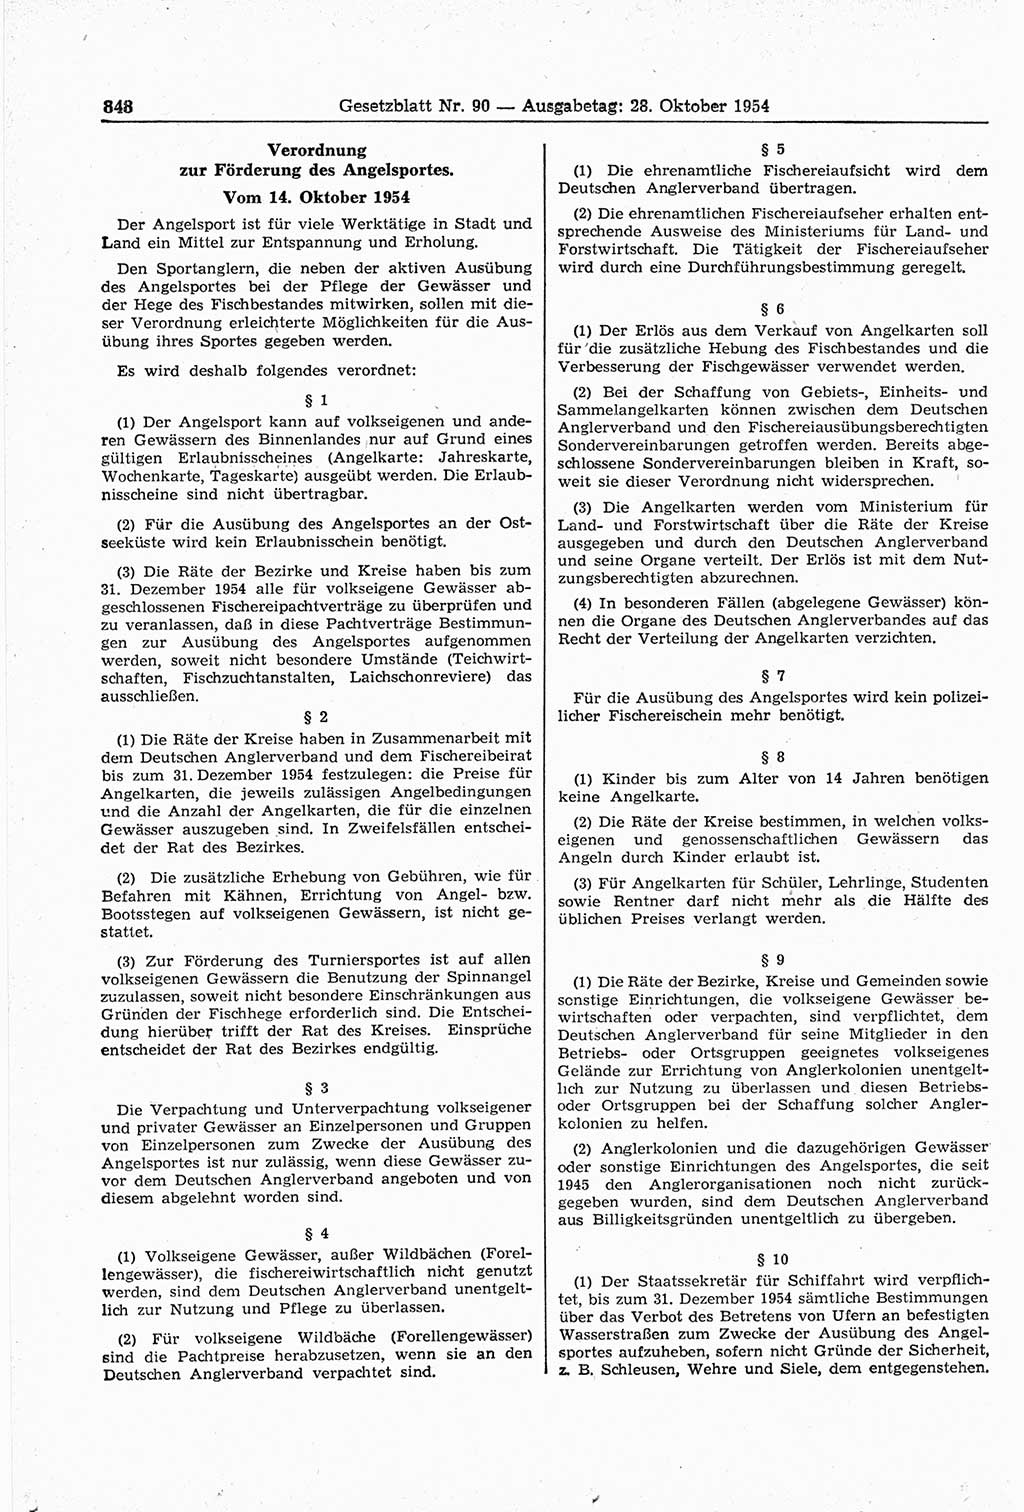 Gesetzblatt (GBl.) der Deutschen Demokratischen Republik (DDR) 1954, Seite 848 (GBl. DDR 1954, S. 848)